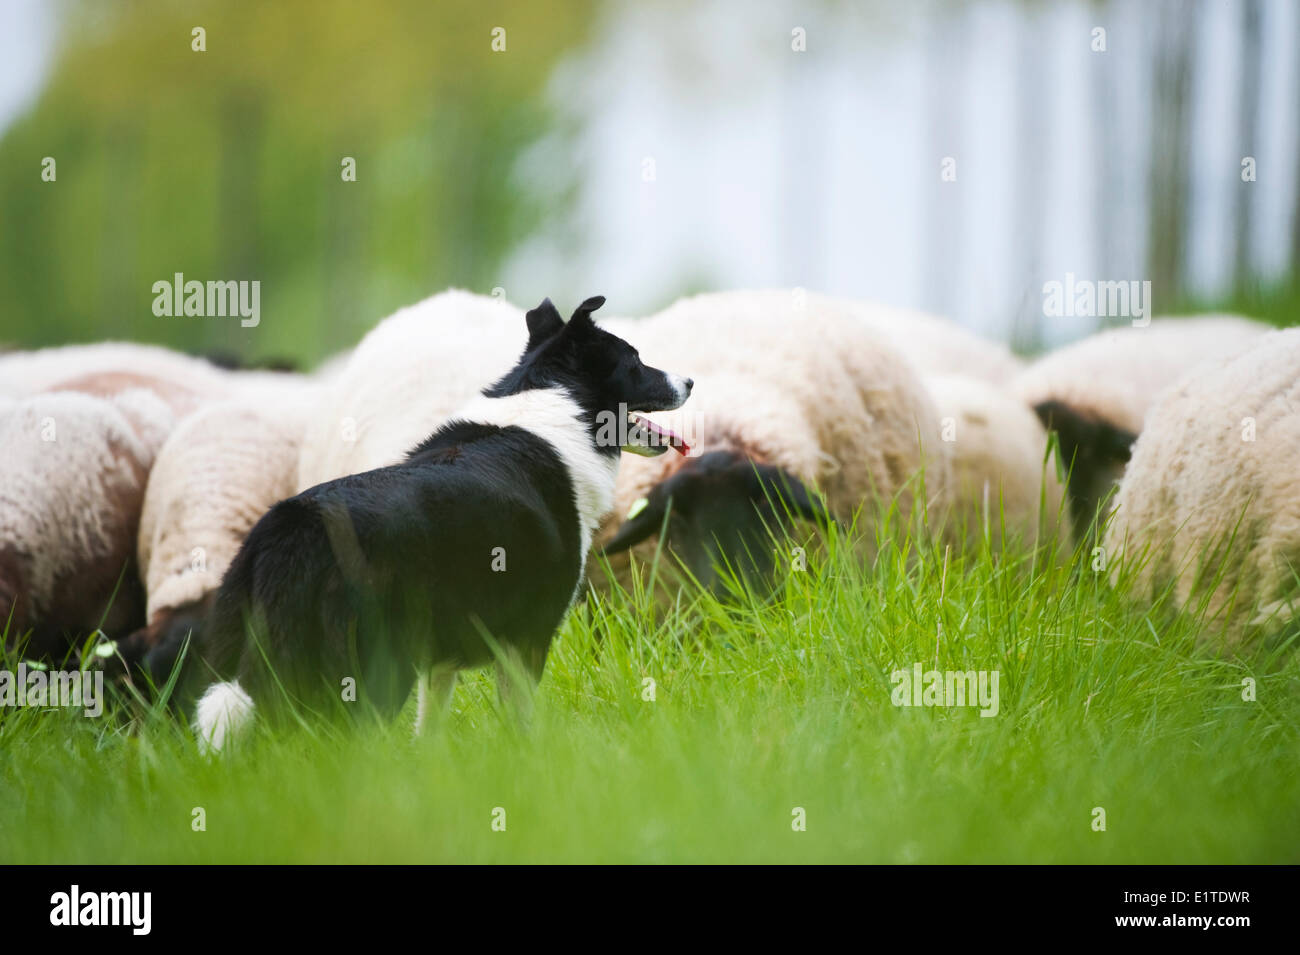 Rebaño de ovejas pastando ovejero y un dique en el bloemdijken van Zuid-beveland reserva natural del delta holandés Foto de stock